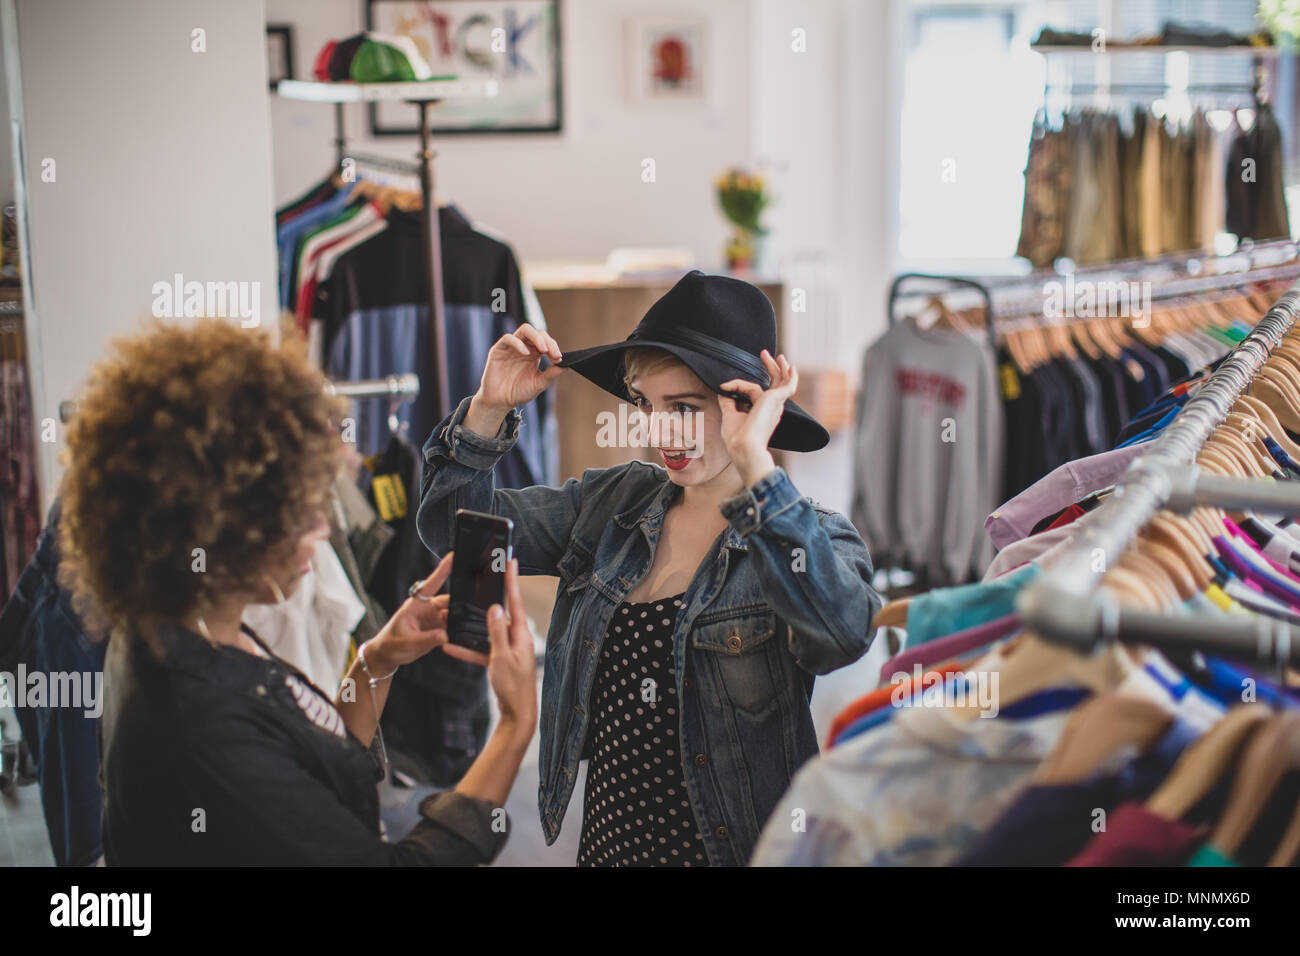 La milenaria tratando en un sombrero en una tienda de ropa vintage Foto de stock